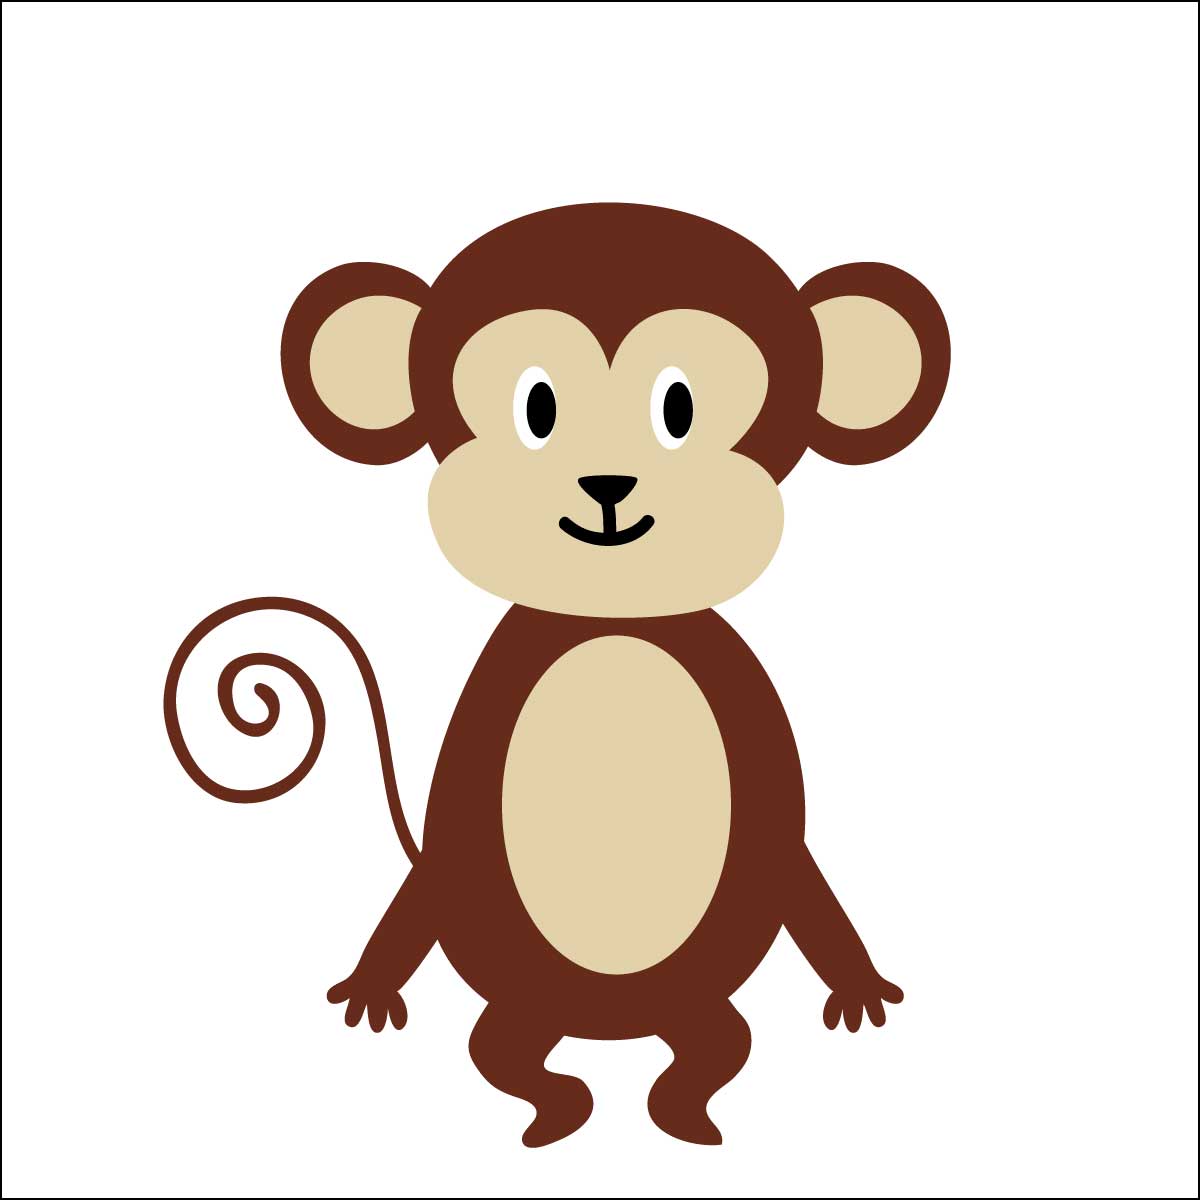 サルキャラクター人気ランキング 猿 チンパンジー オランウータンも 9 10位 ランキングー